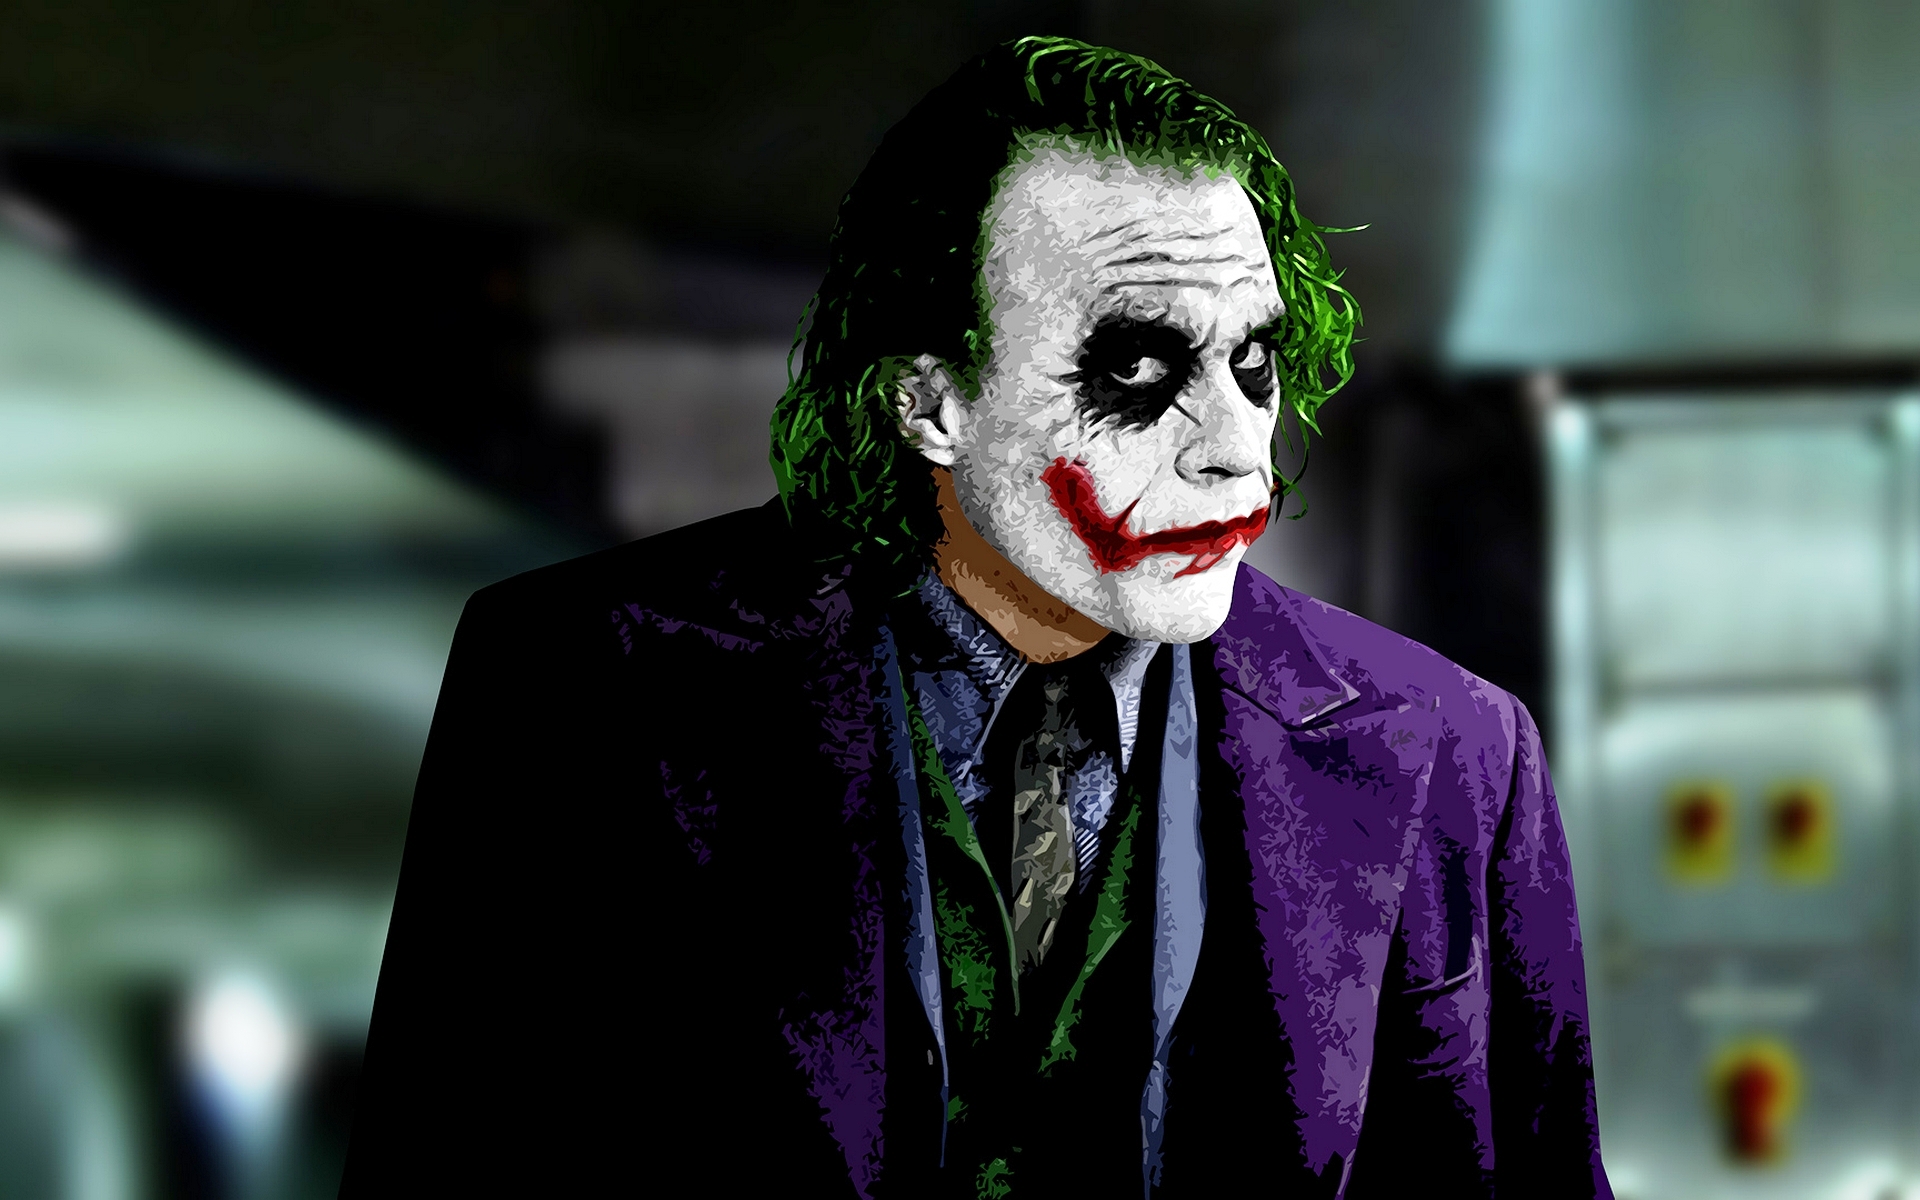 40 Gambar Batman Joker Wallpaper Hd Mobile terbaru 2020